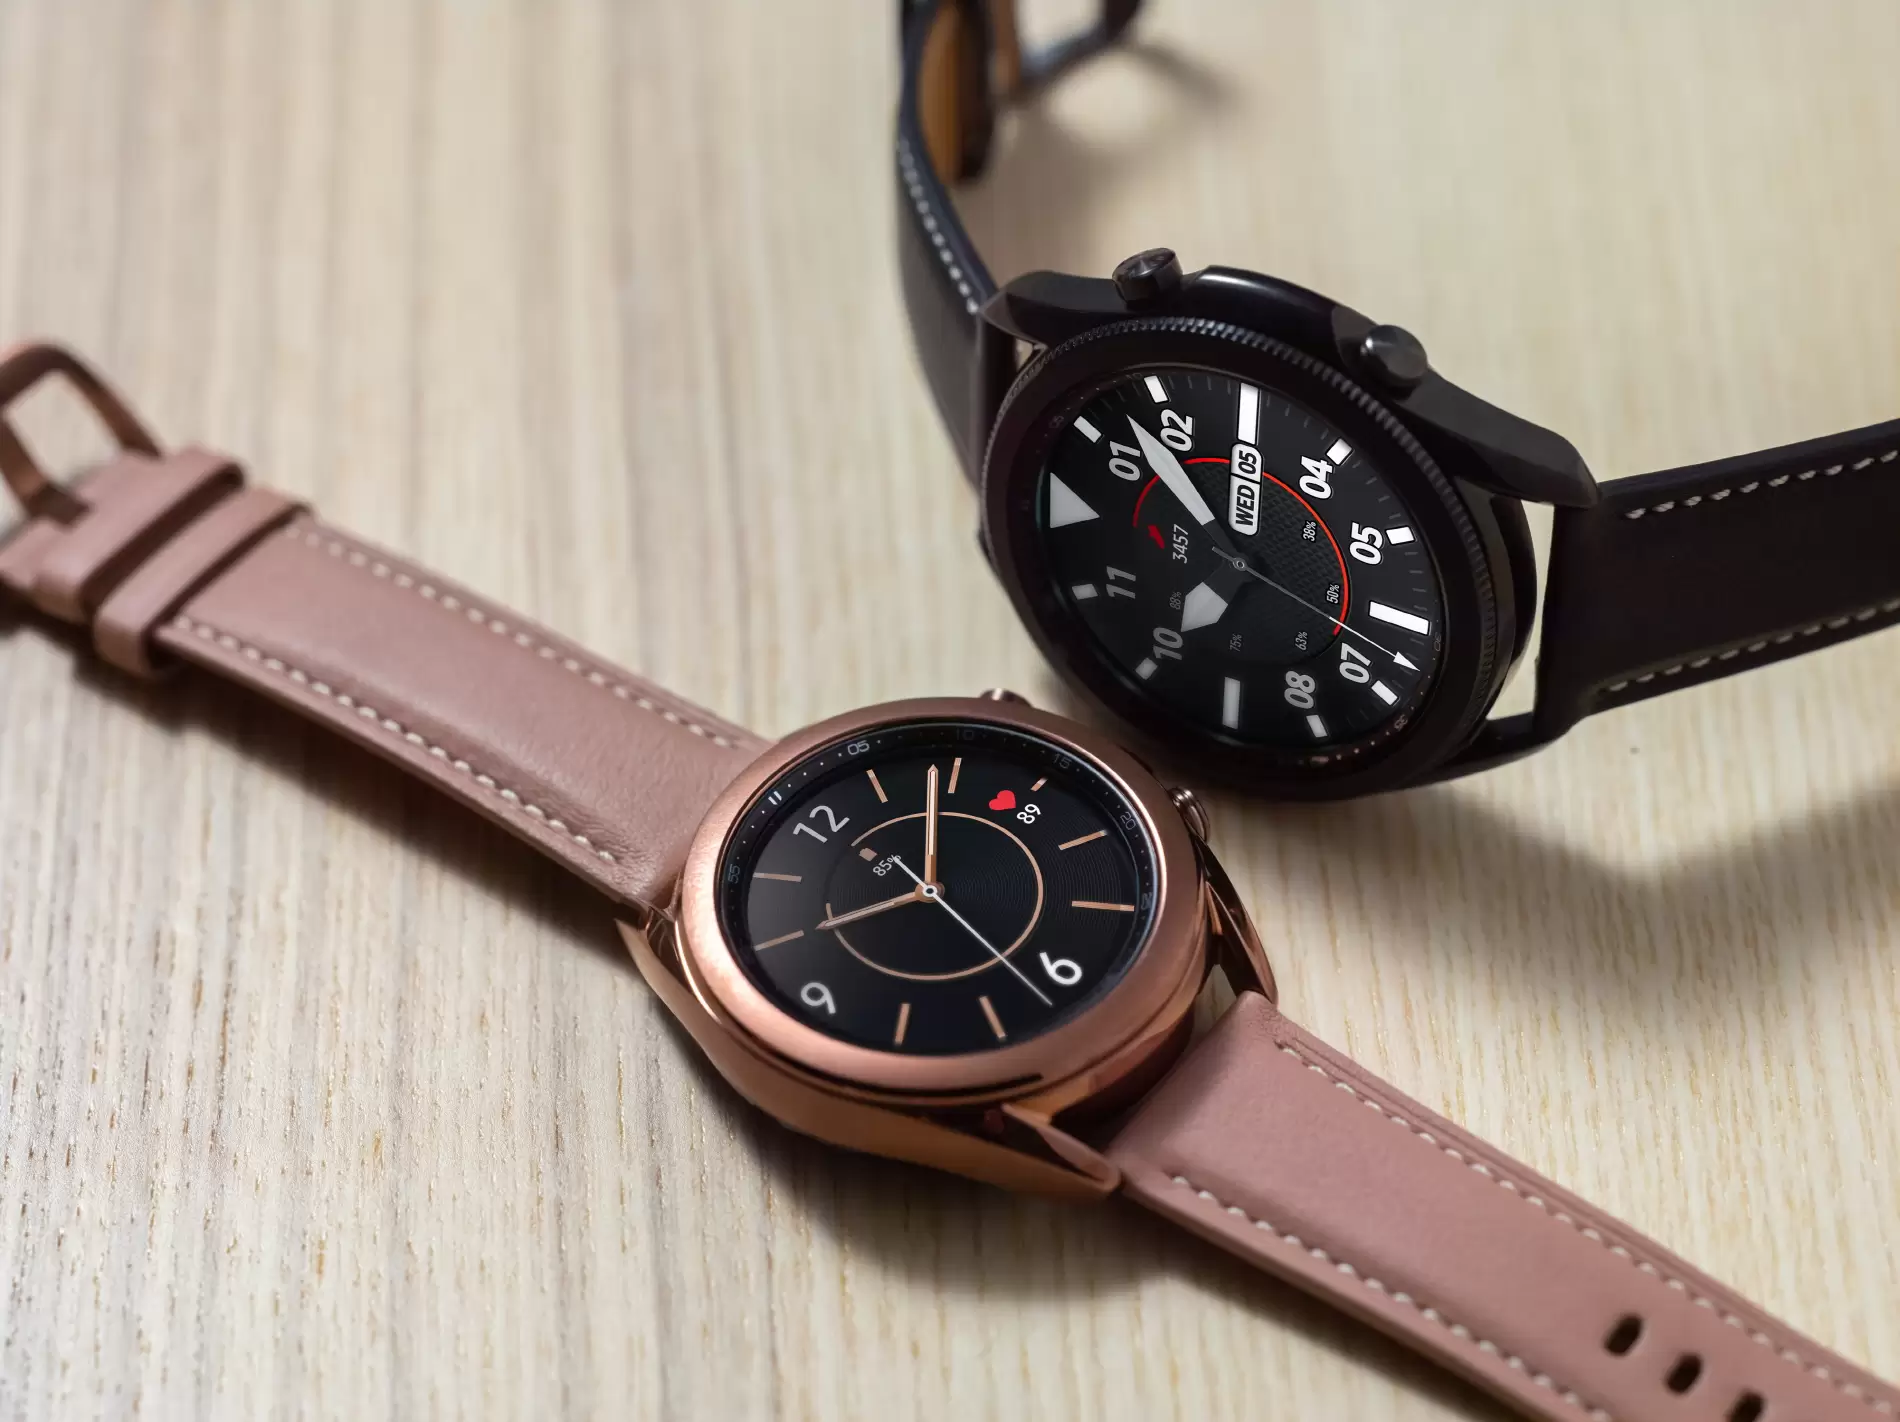 Galaxy Watch modelleri için yeni özellikler geldi